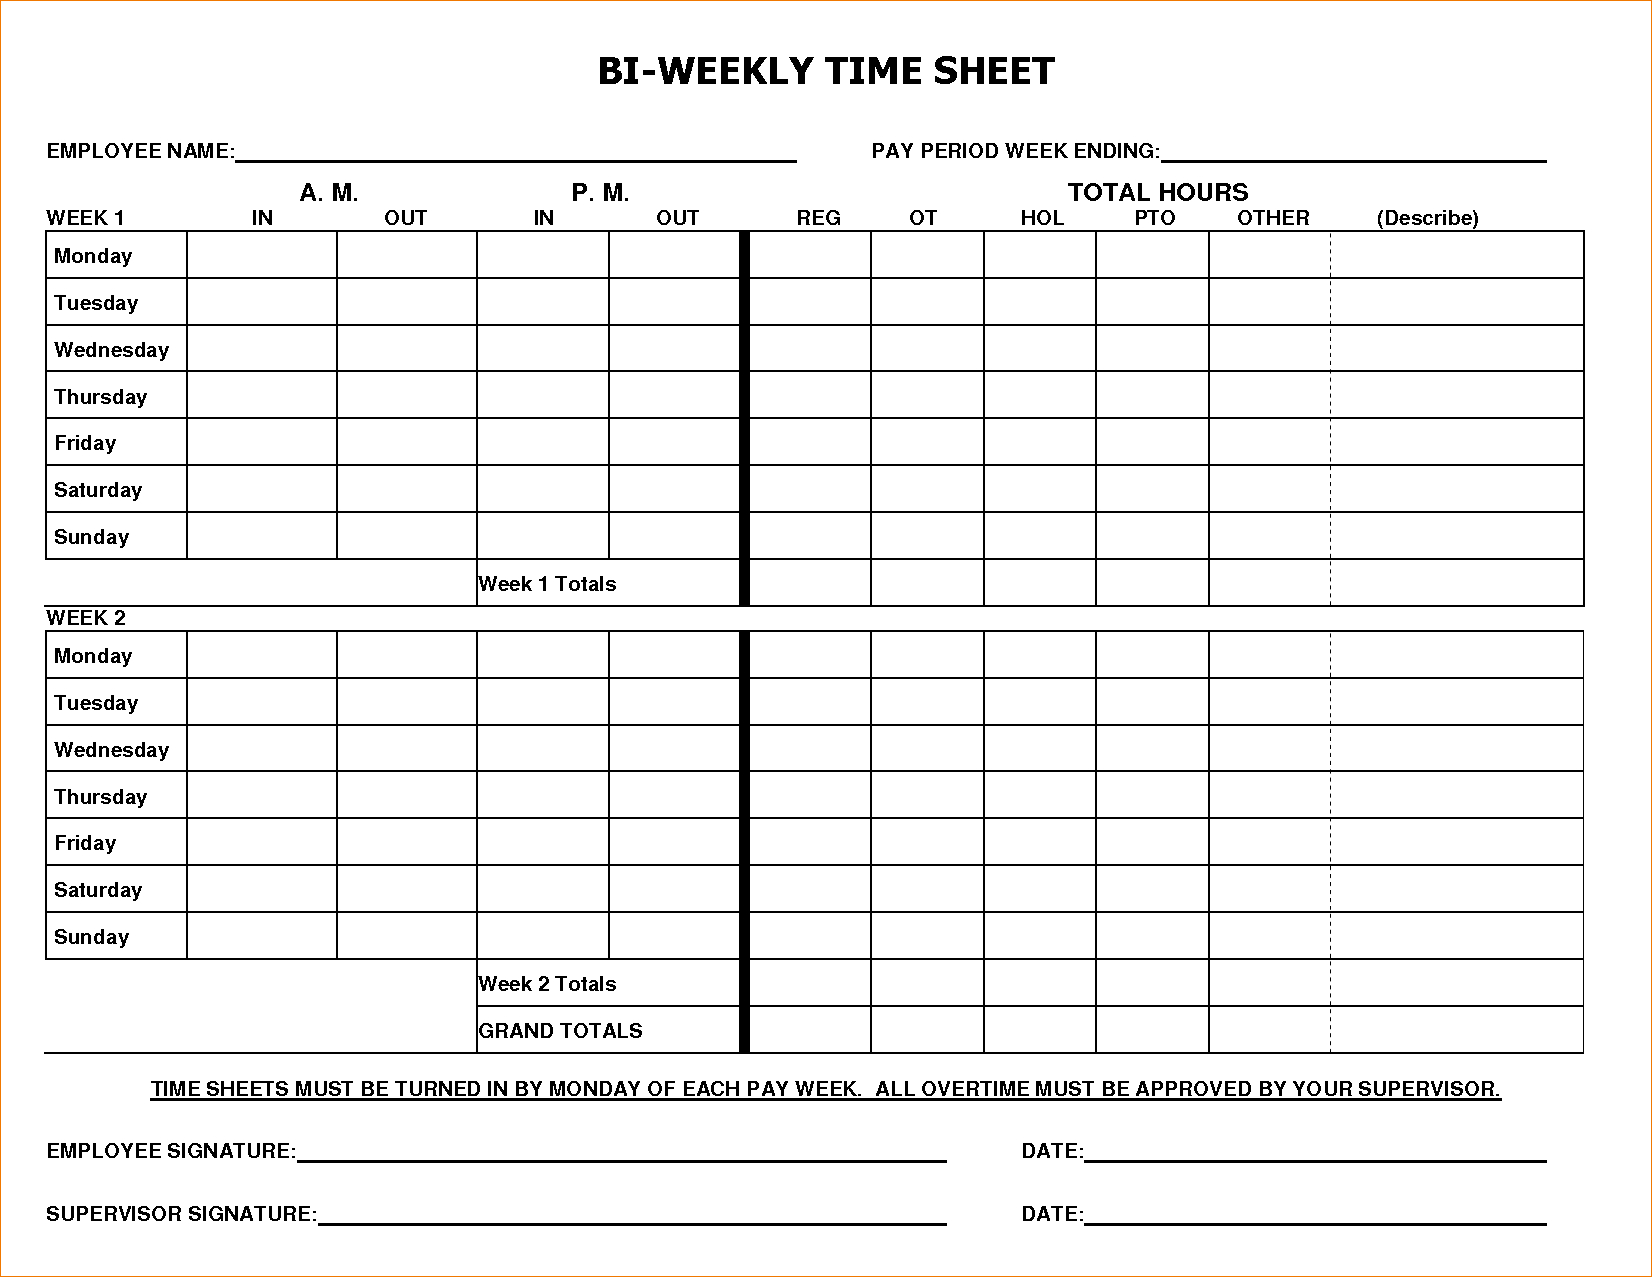 Printable Bi Weekly Time Sheets Printable World Holiday